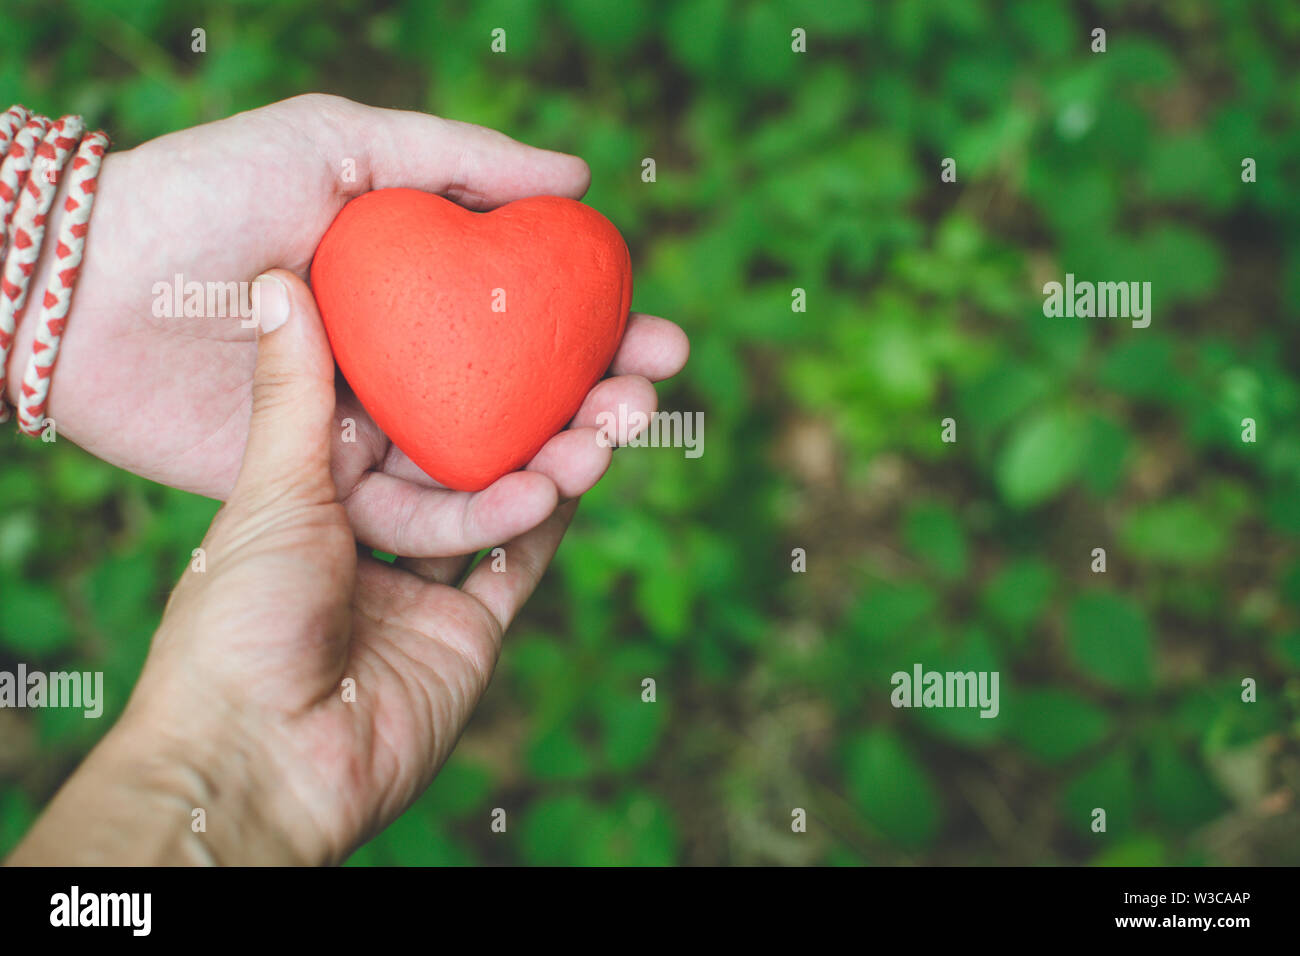 Leute Beziehung Und Liebe Konzept Weibliche Und Mannliche Hande Halten Roten Herzen Auf Grunem Hintergrund Stockfotografie Alamy